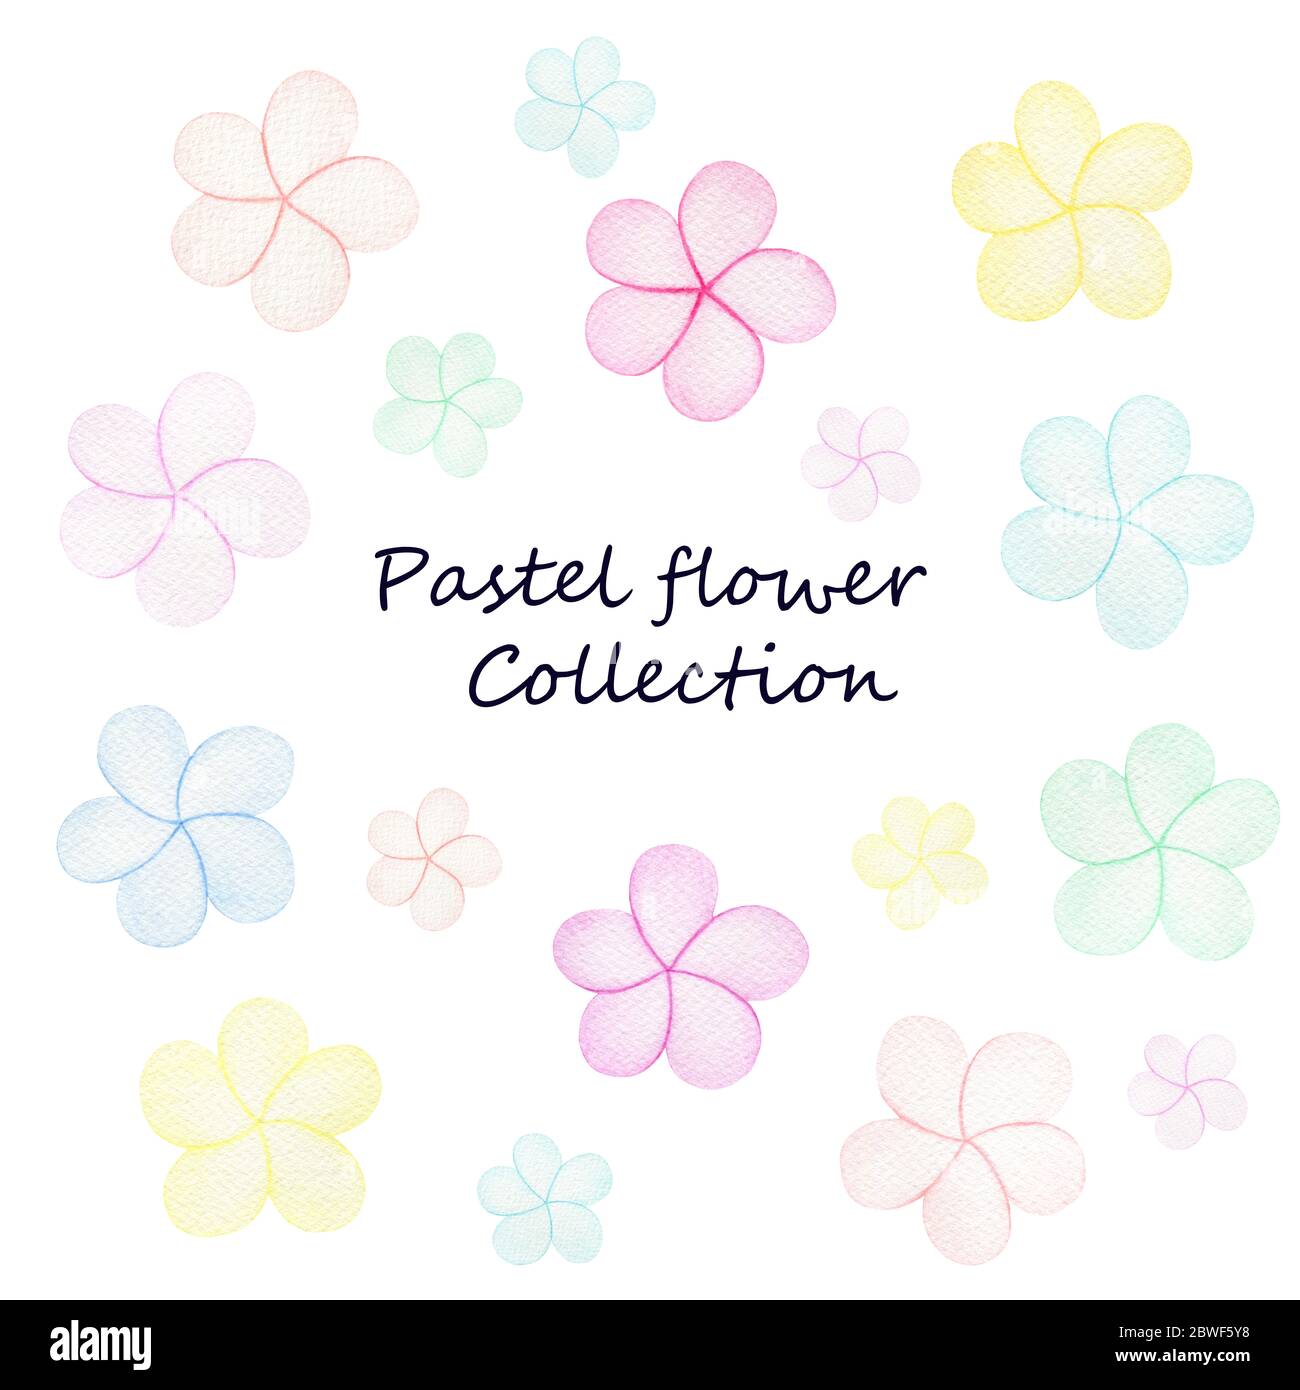 collection de fleurs pastel simple, fleurs colorées et joyeuses dans l'aquarelle illustration isolée sur blanc Banque D'Images